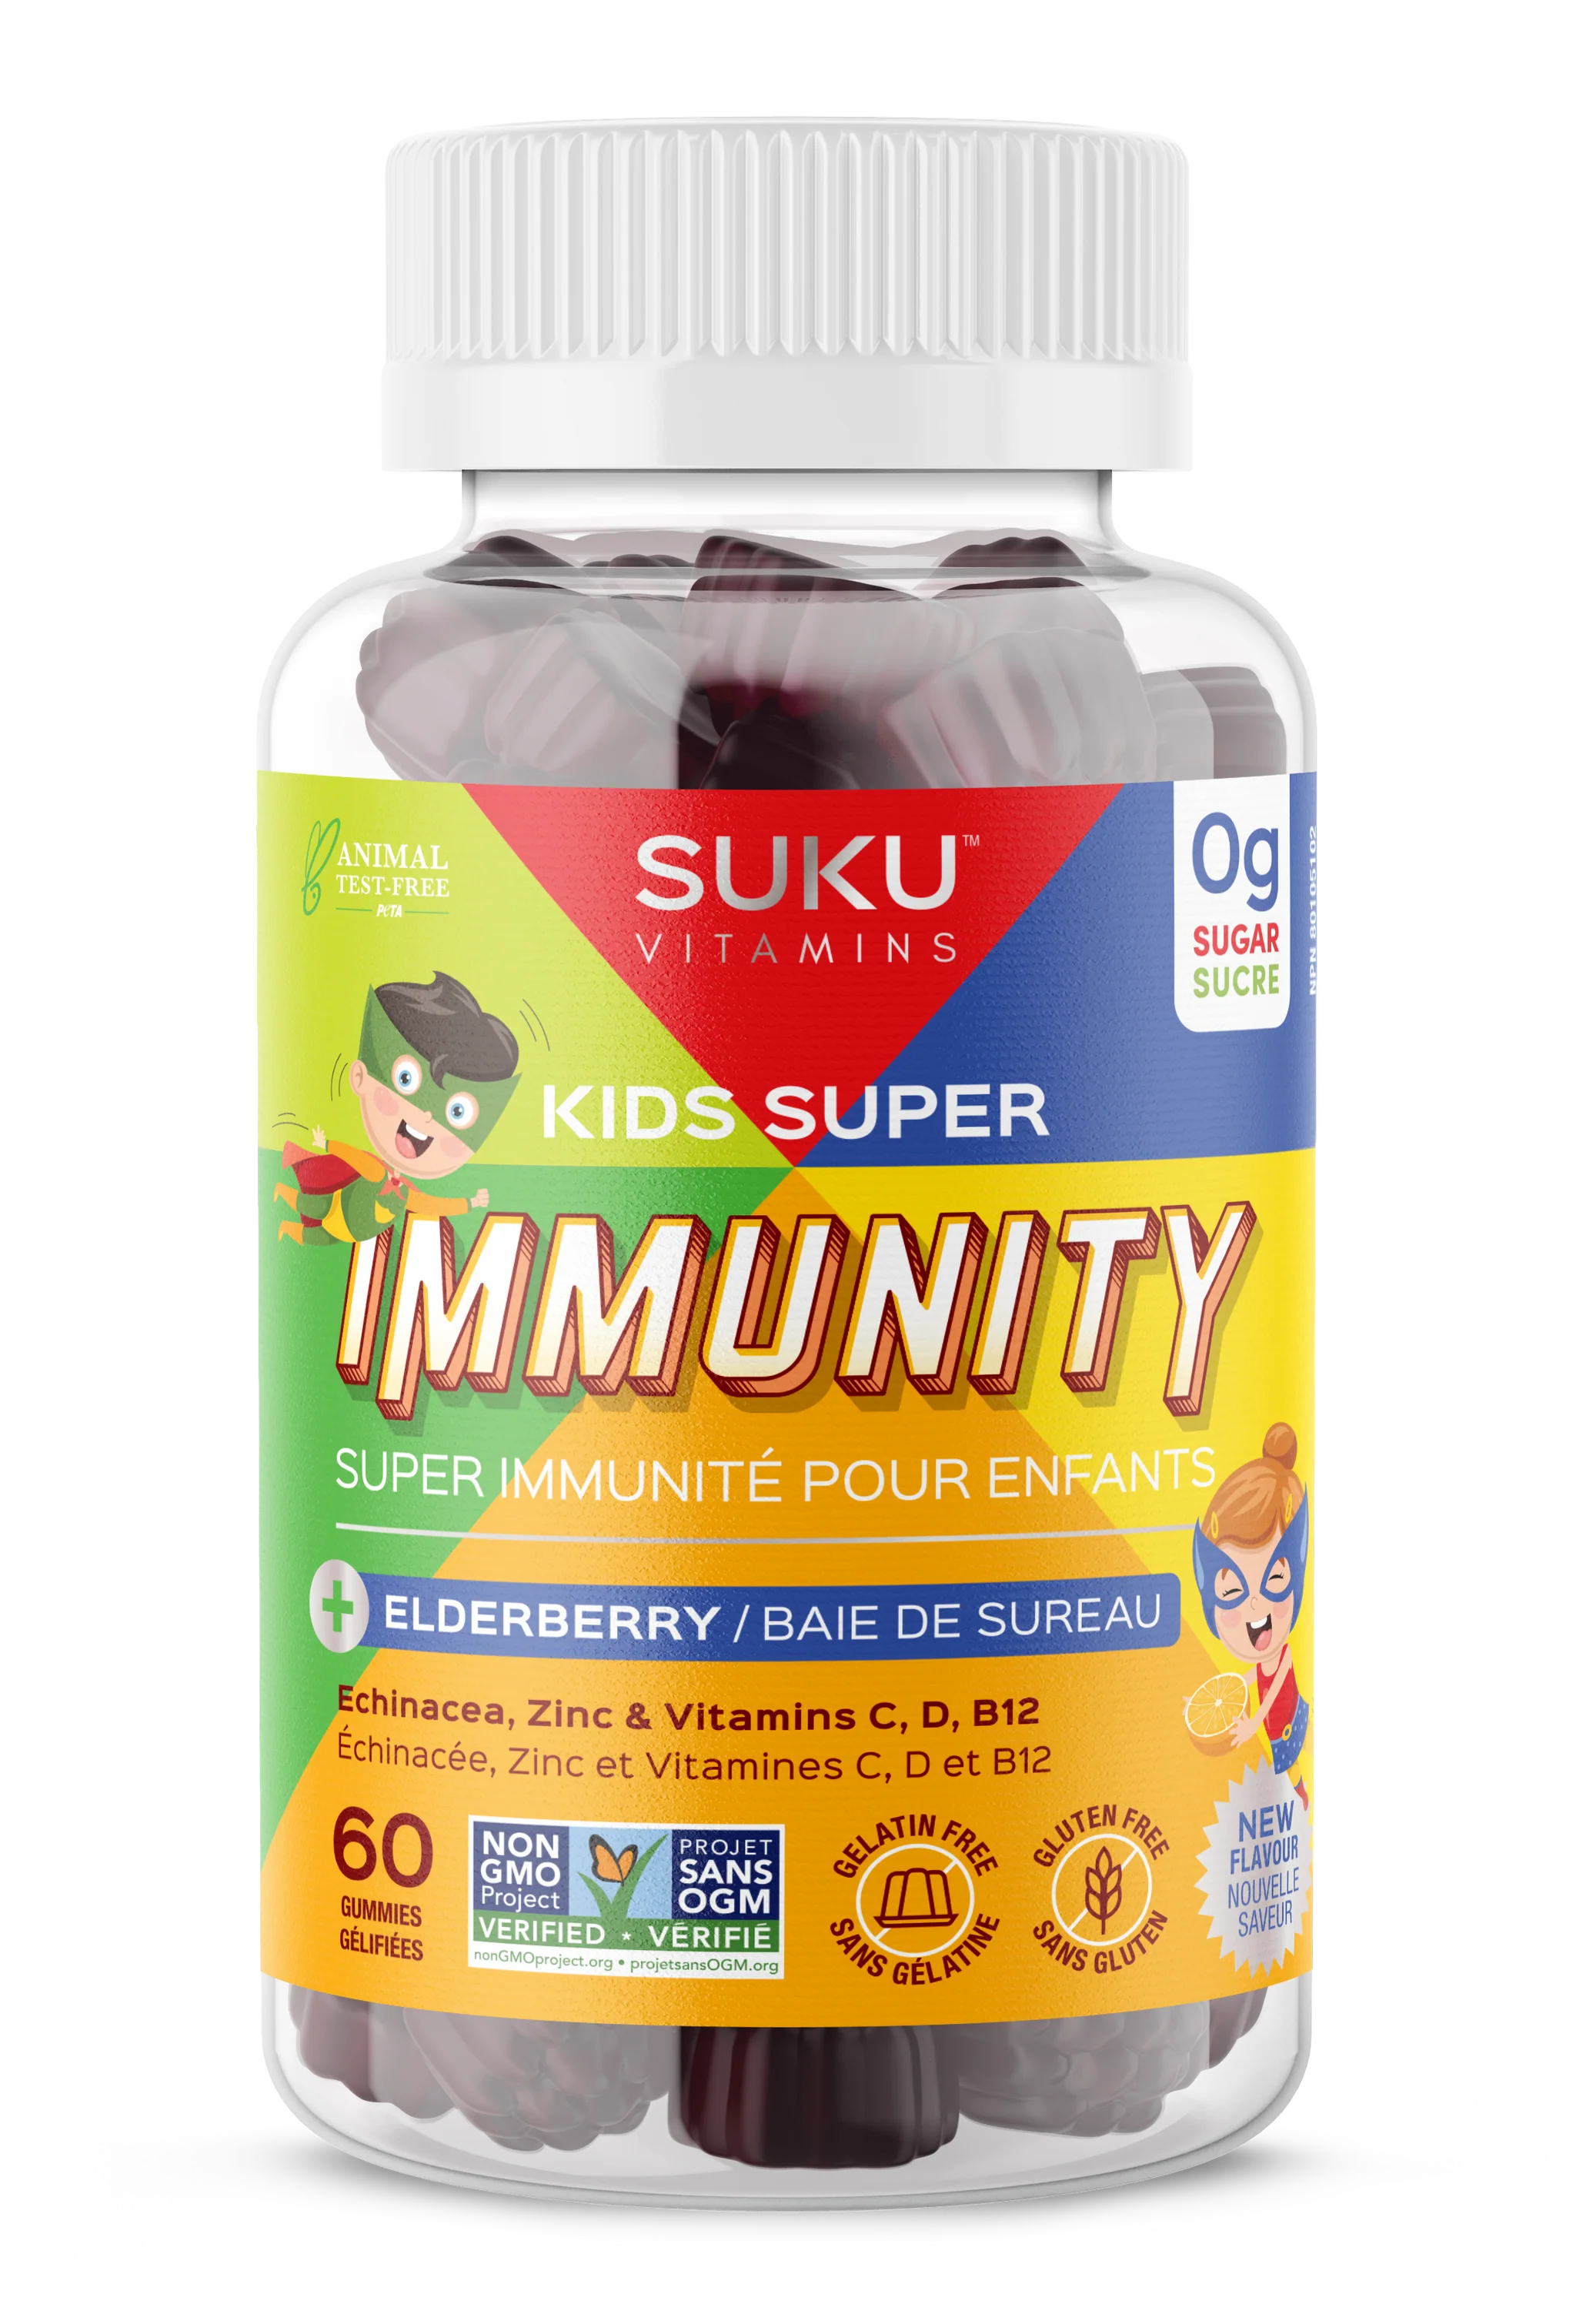 Kids Super Immunity